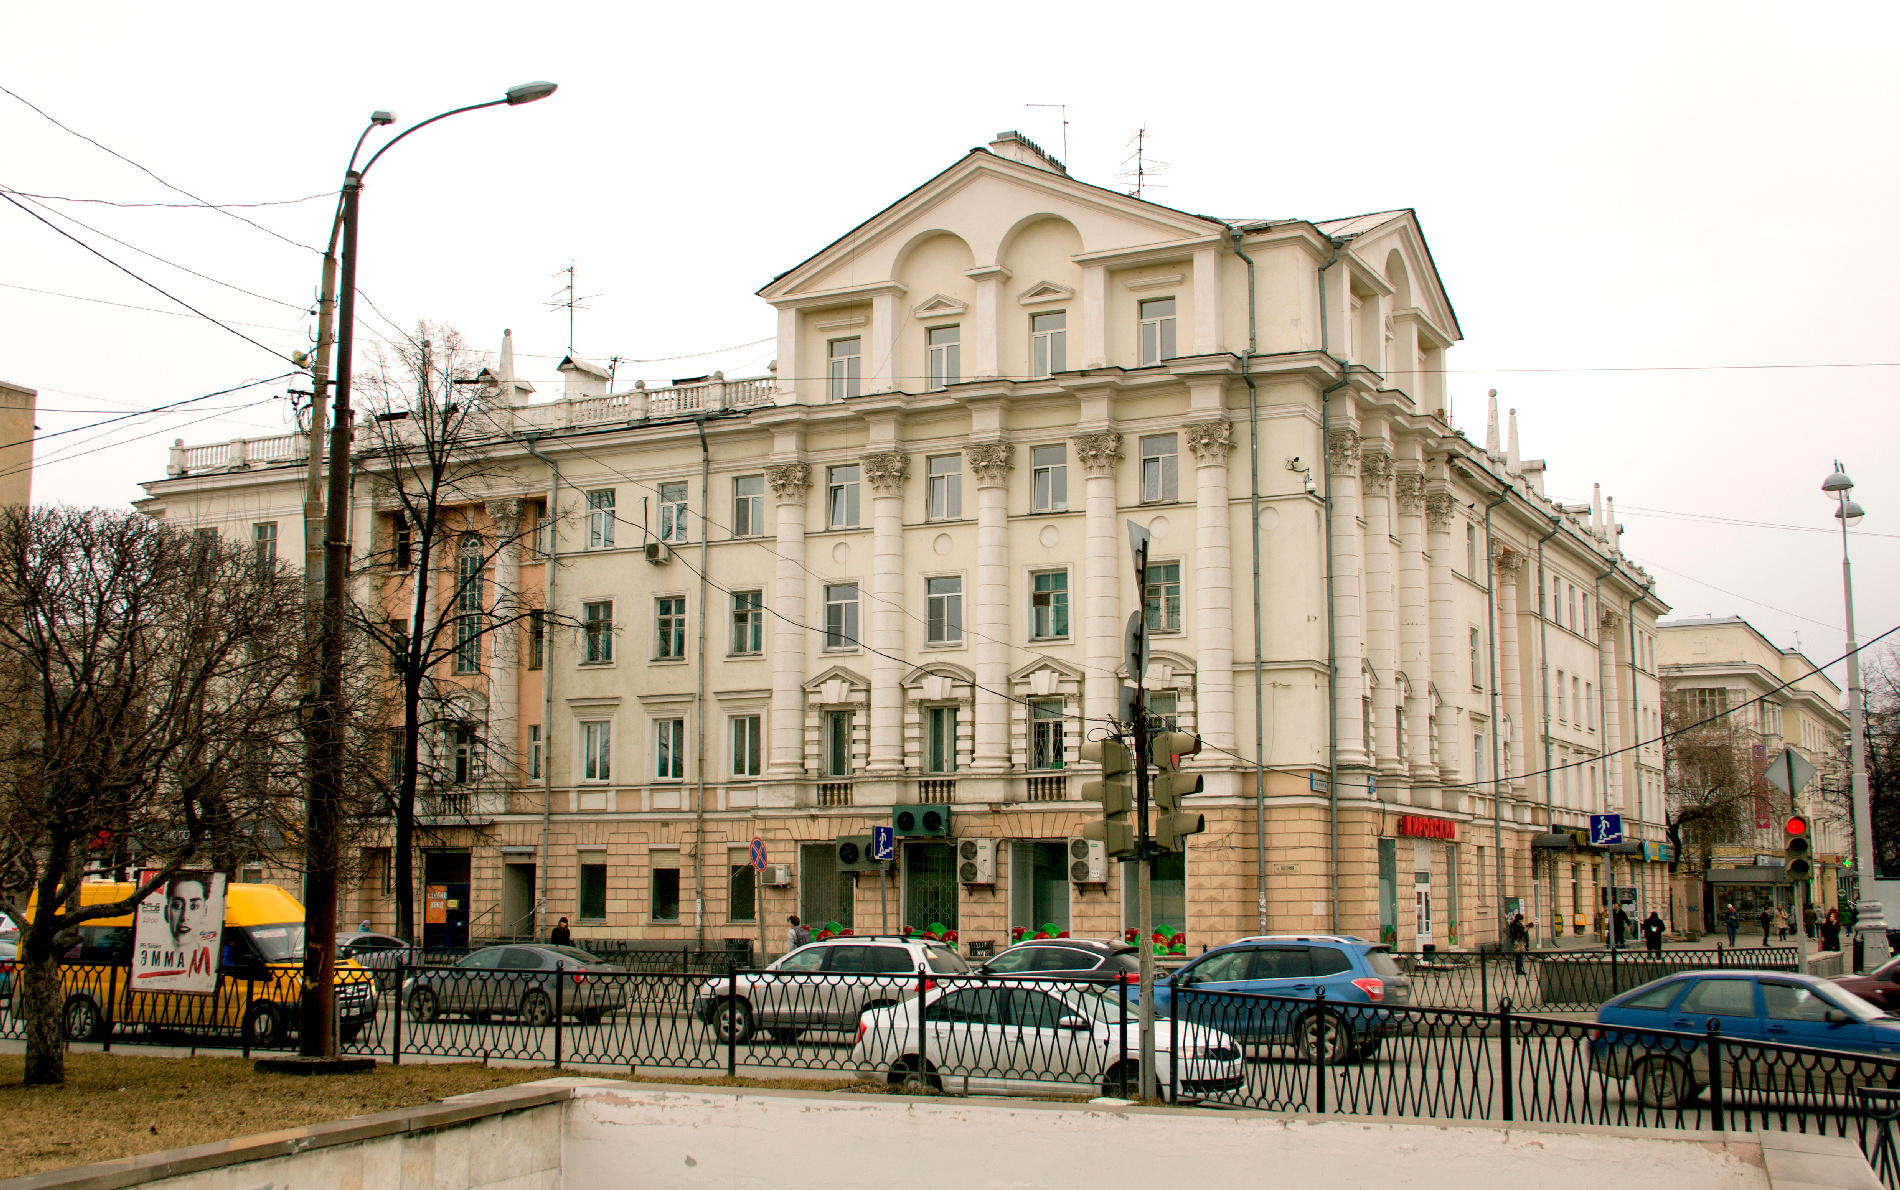 Дом архитектора Грушенко на Ленина, 58. Так, по мнению авторов статьи, строить было нельзя.